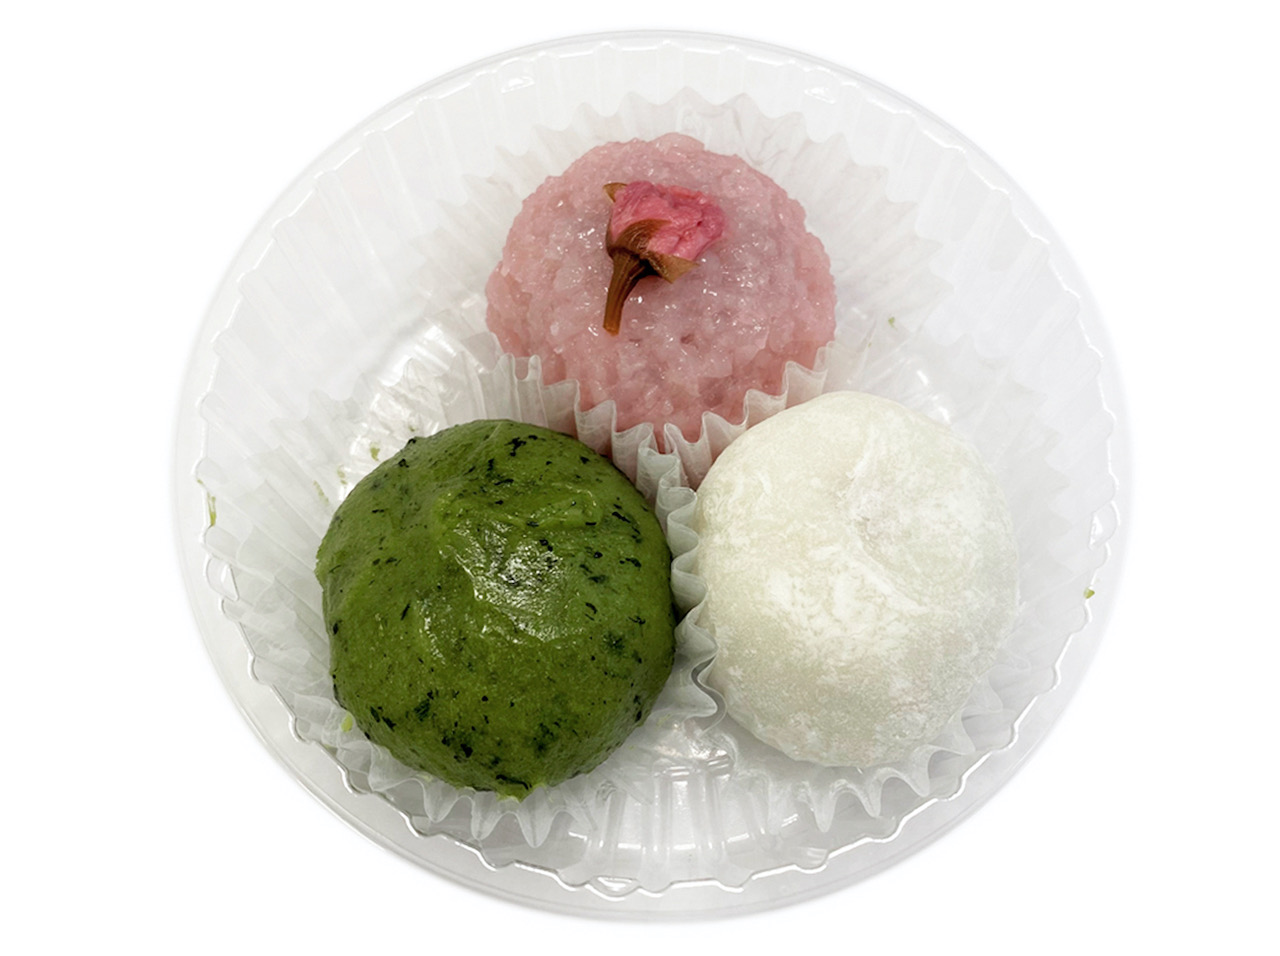 ３色の桜もち・餡もち・草もちのアソート大福です。こしあんには北海道十勝産の風味の良い小豆を使用。